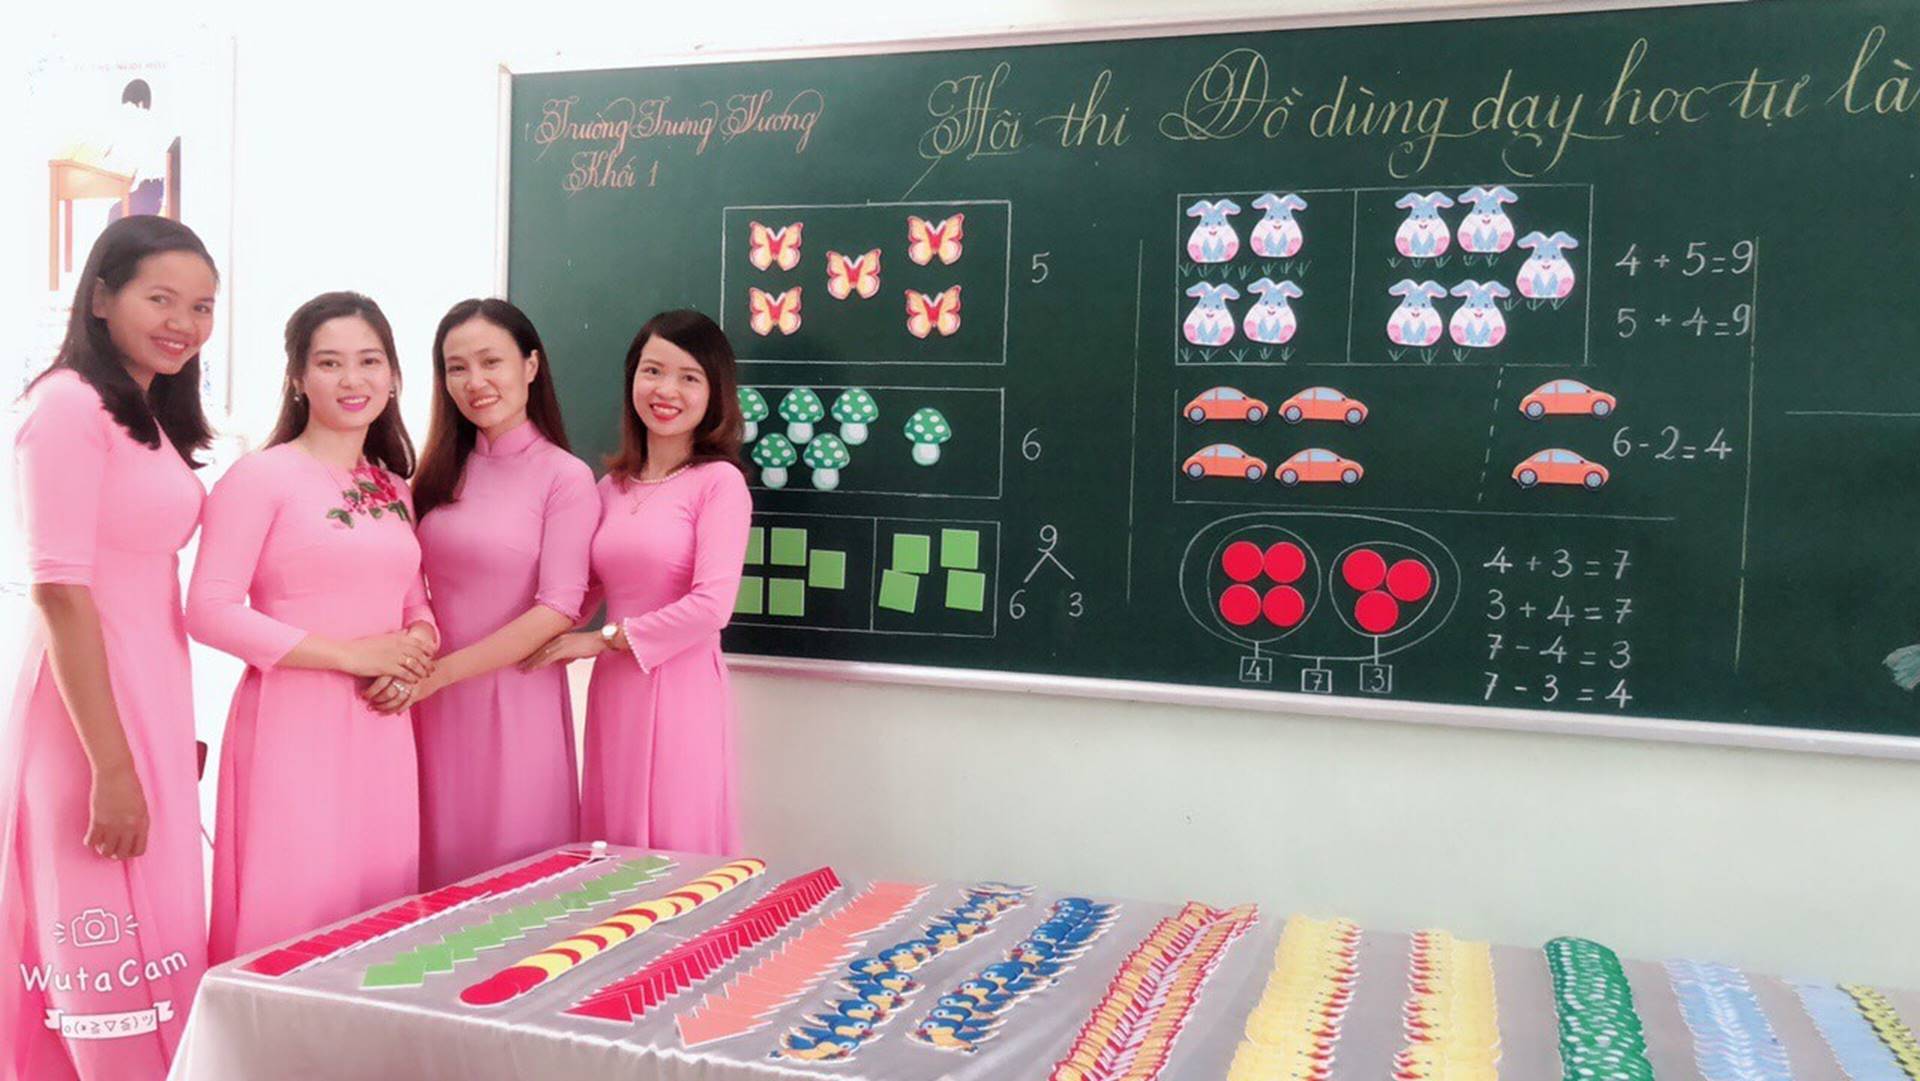 Các cô giáo viết đẹp hơn đánh máy ở Quảng Trị tiếp tục gây sốt với khả năng sáng tạo đồ dùng dạy học không giới hạn-1